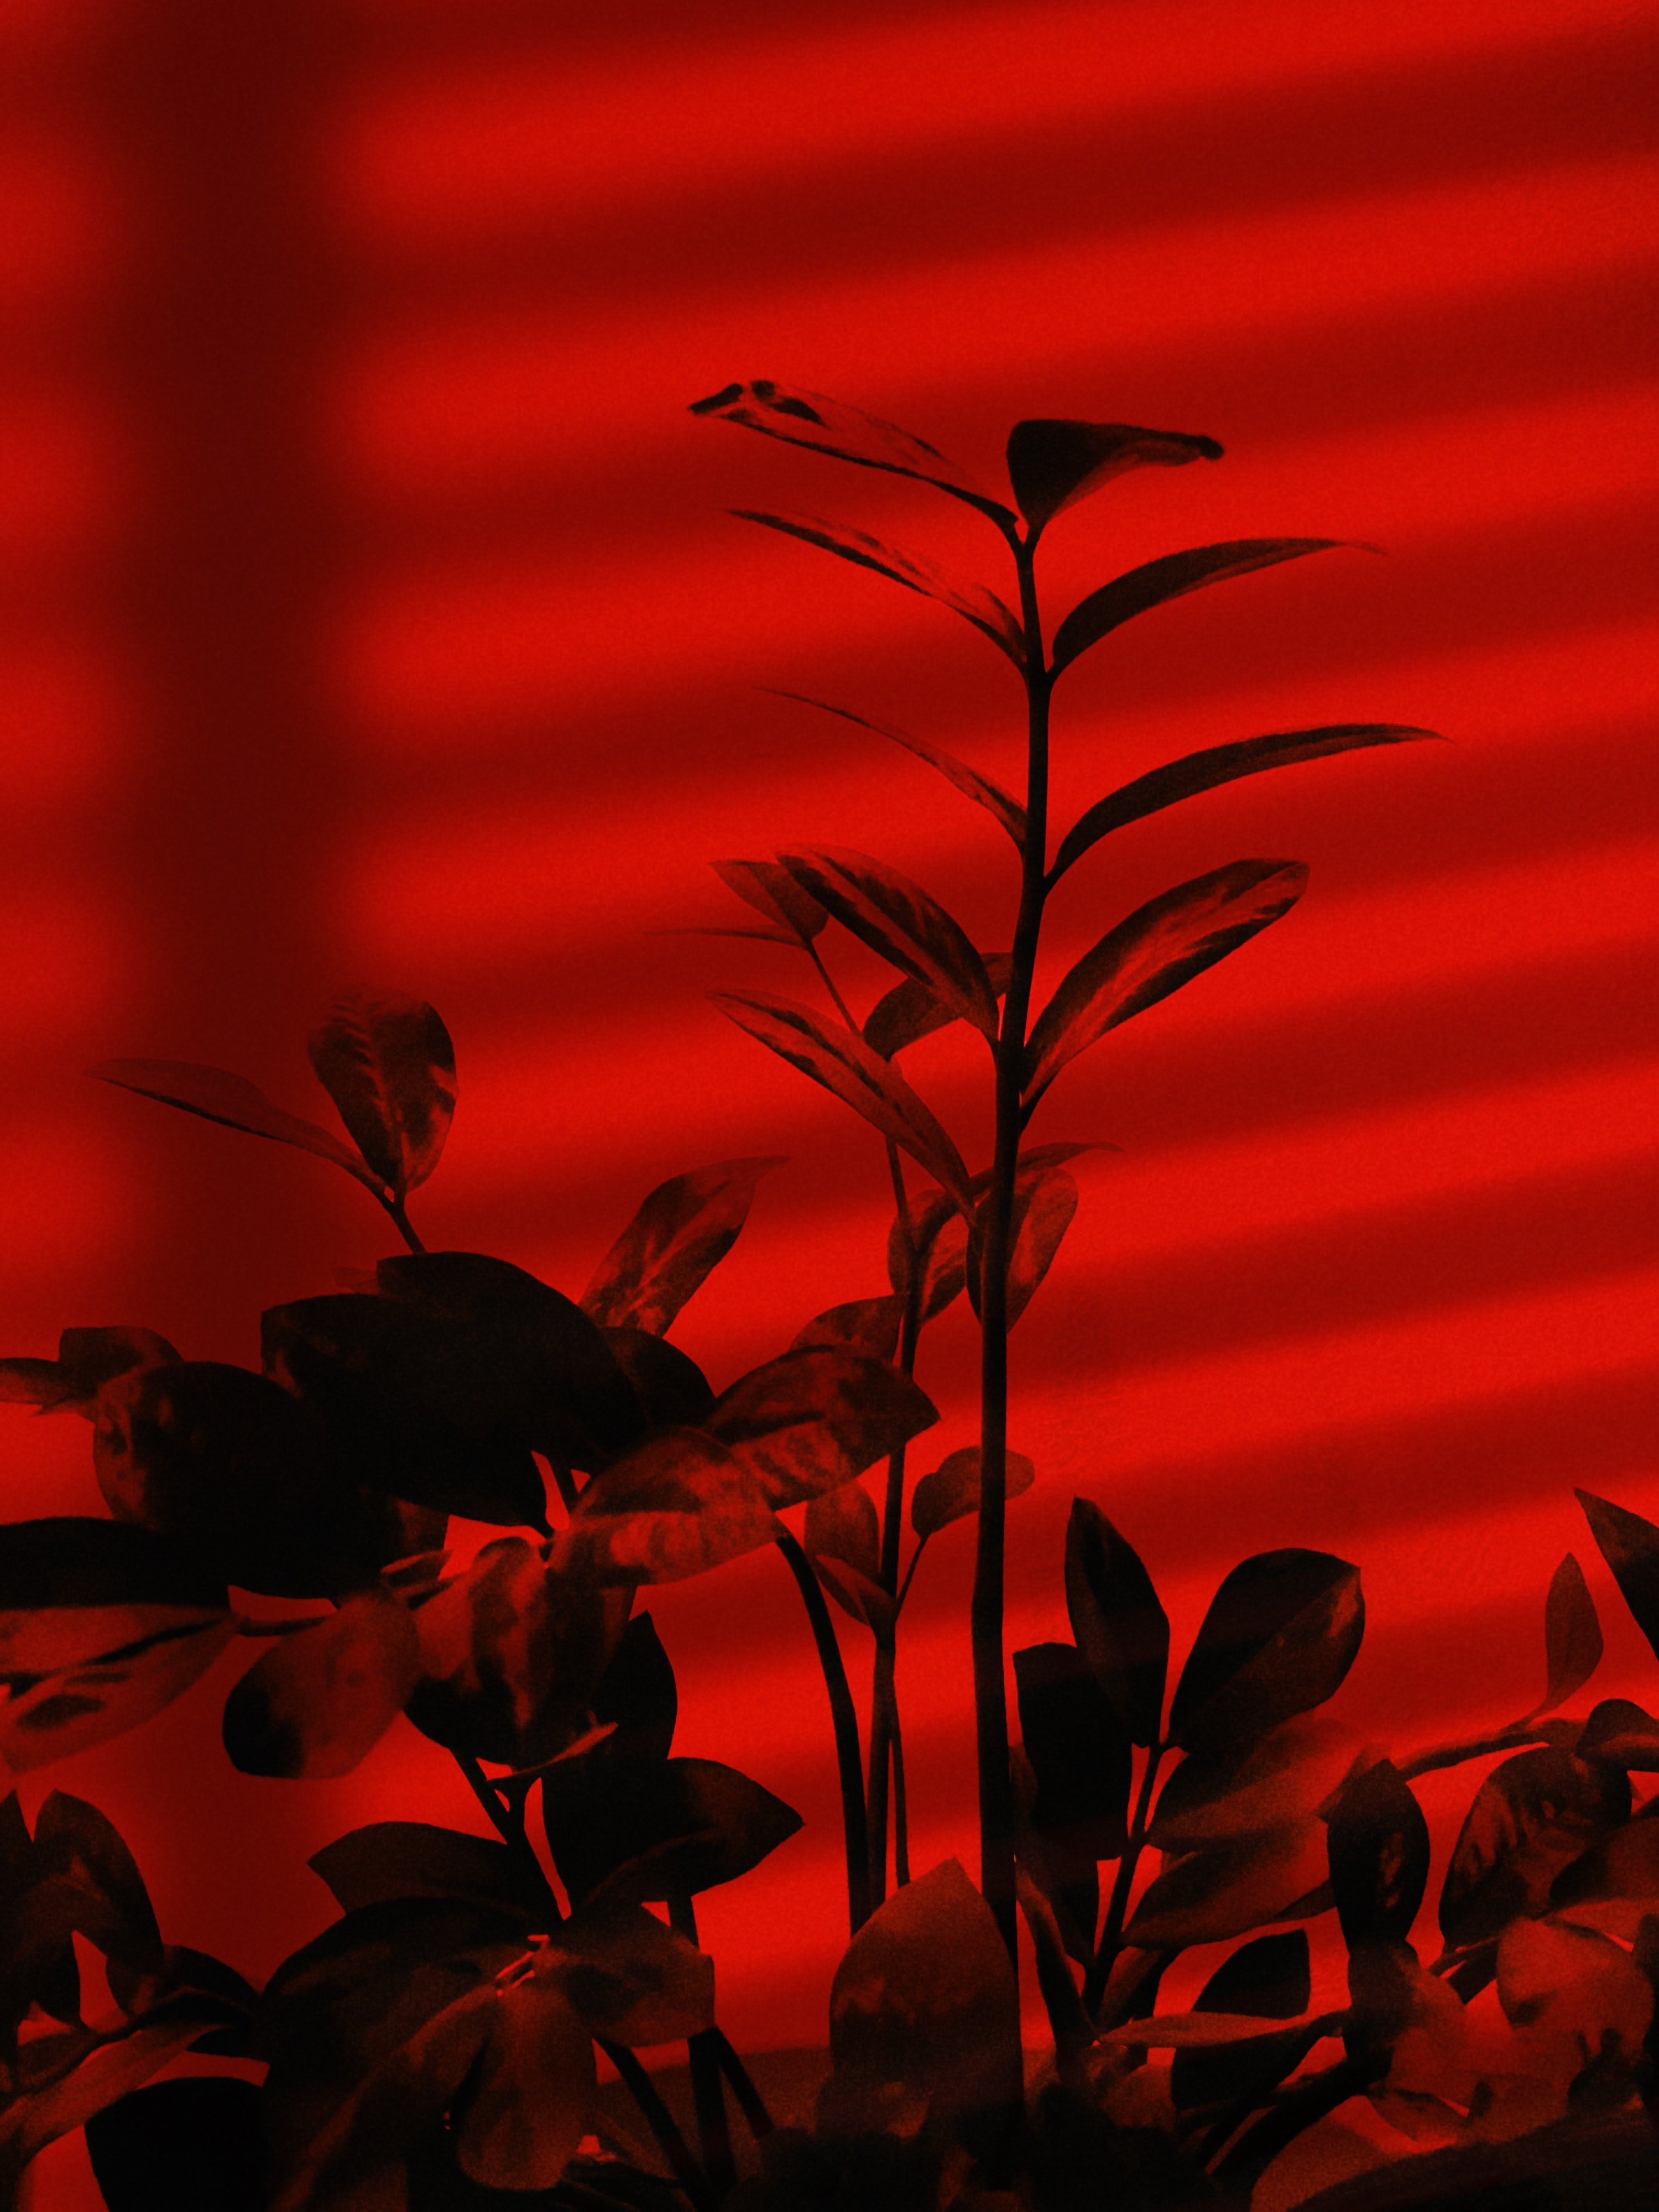 157401 免費下載壁紙 植物, 红色, 黑暗的, 黑暗, 红色的, 分行, 分支 屏保和圖片